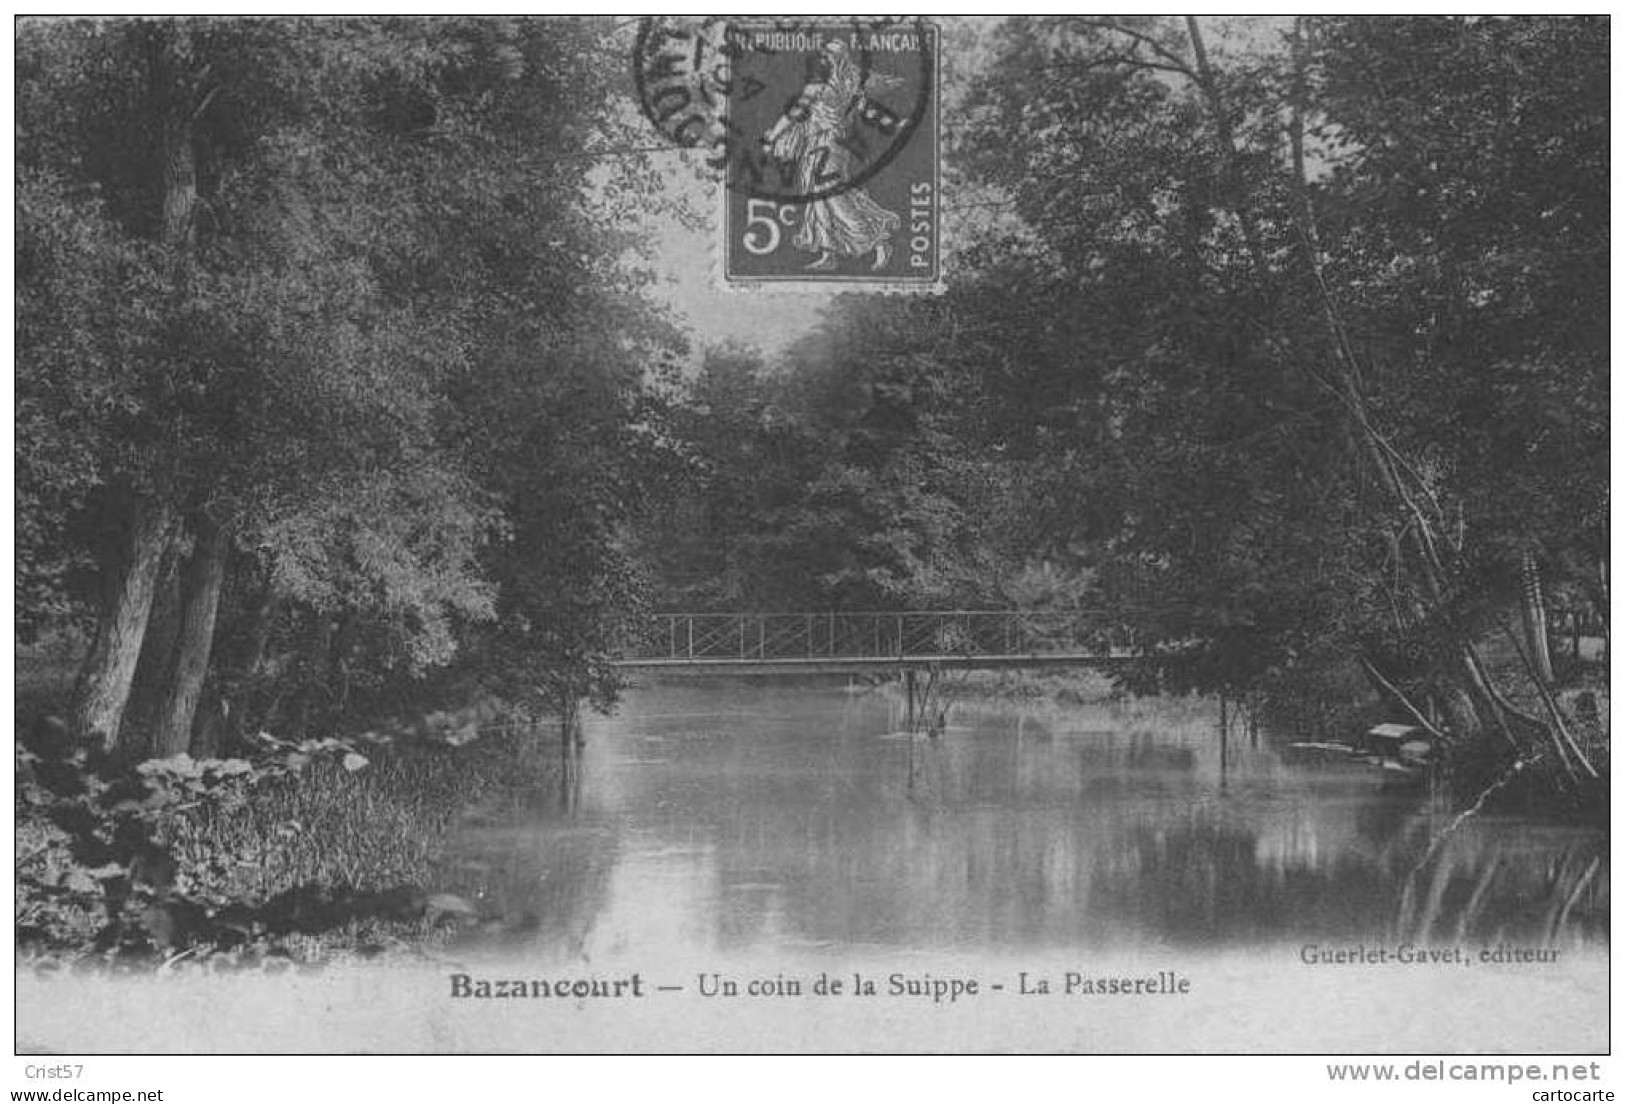 BAZANCOURT - Bazancourt